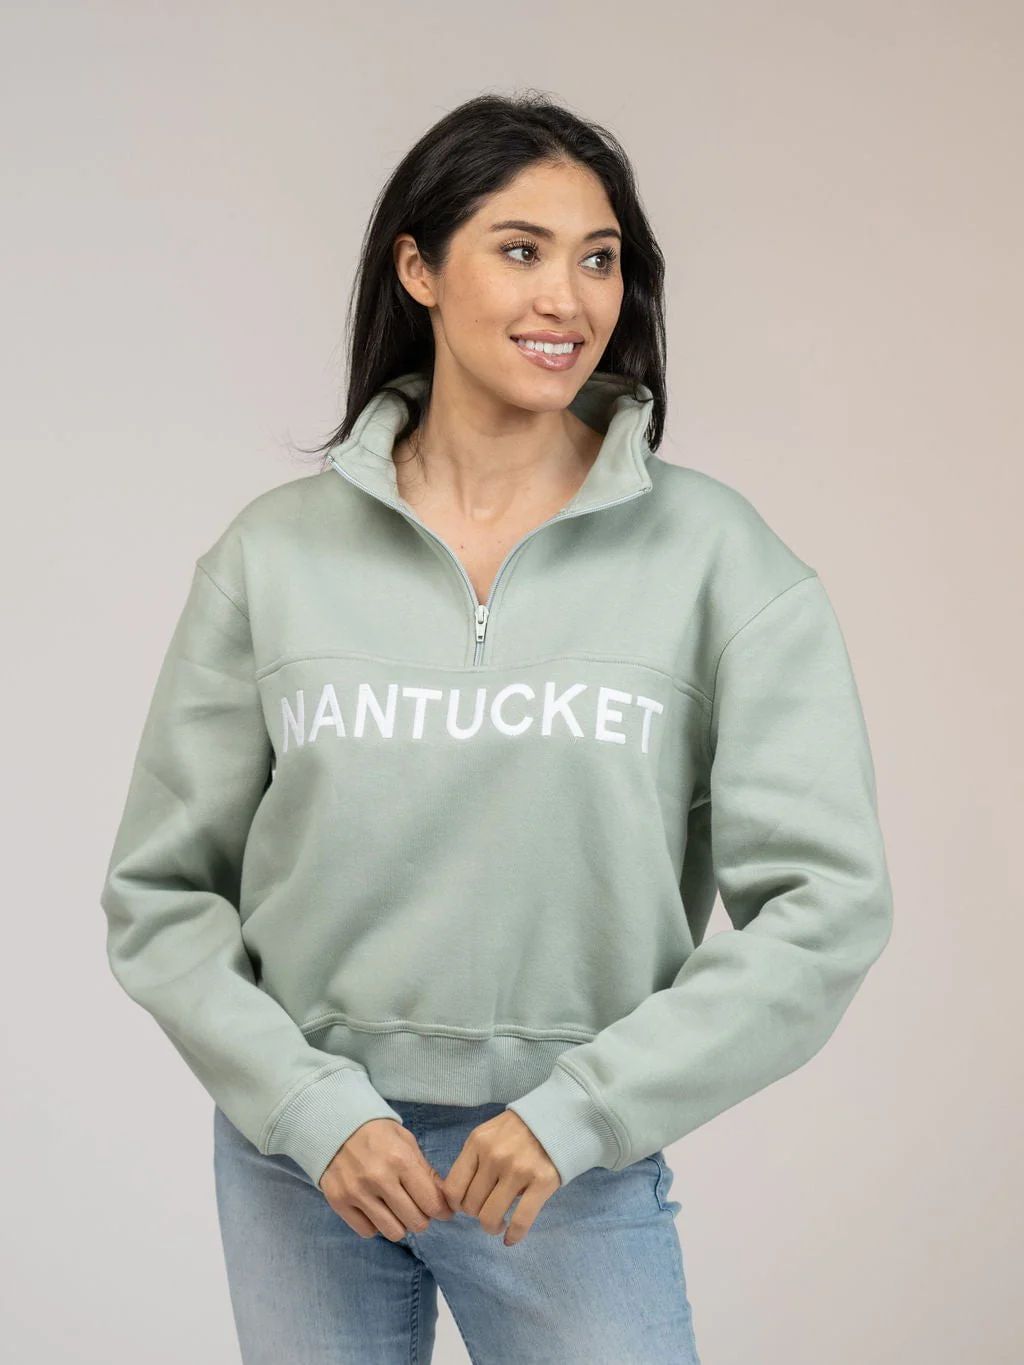 Nantucket Half Zip Sweatshirt in Green | Beau & Ro